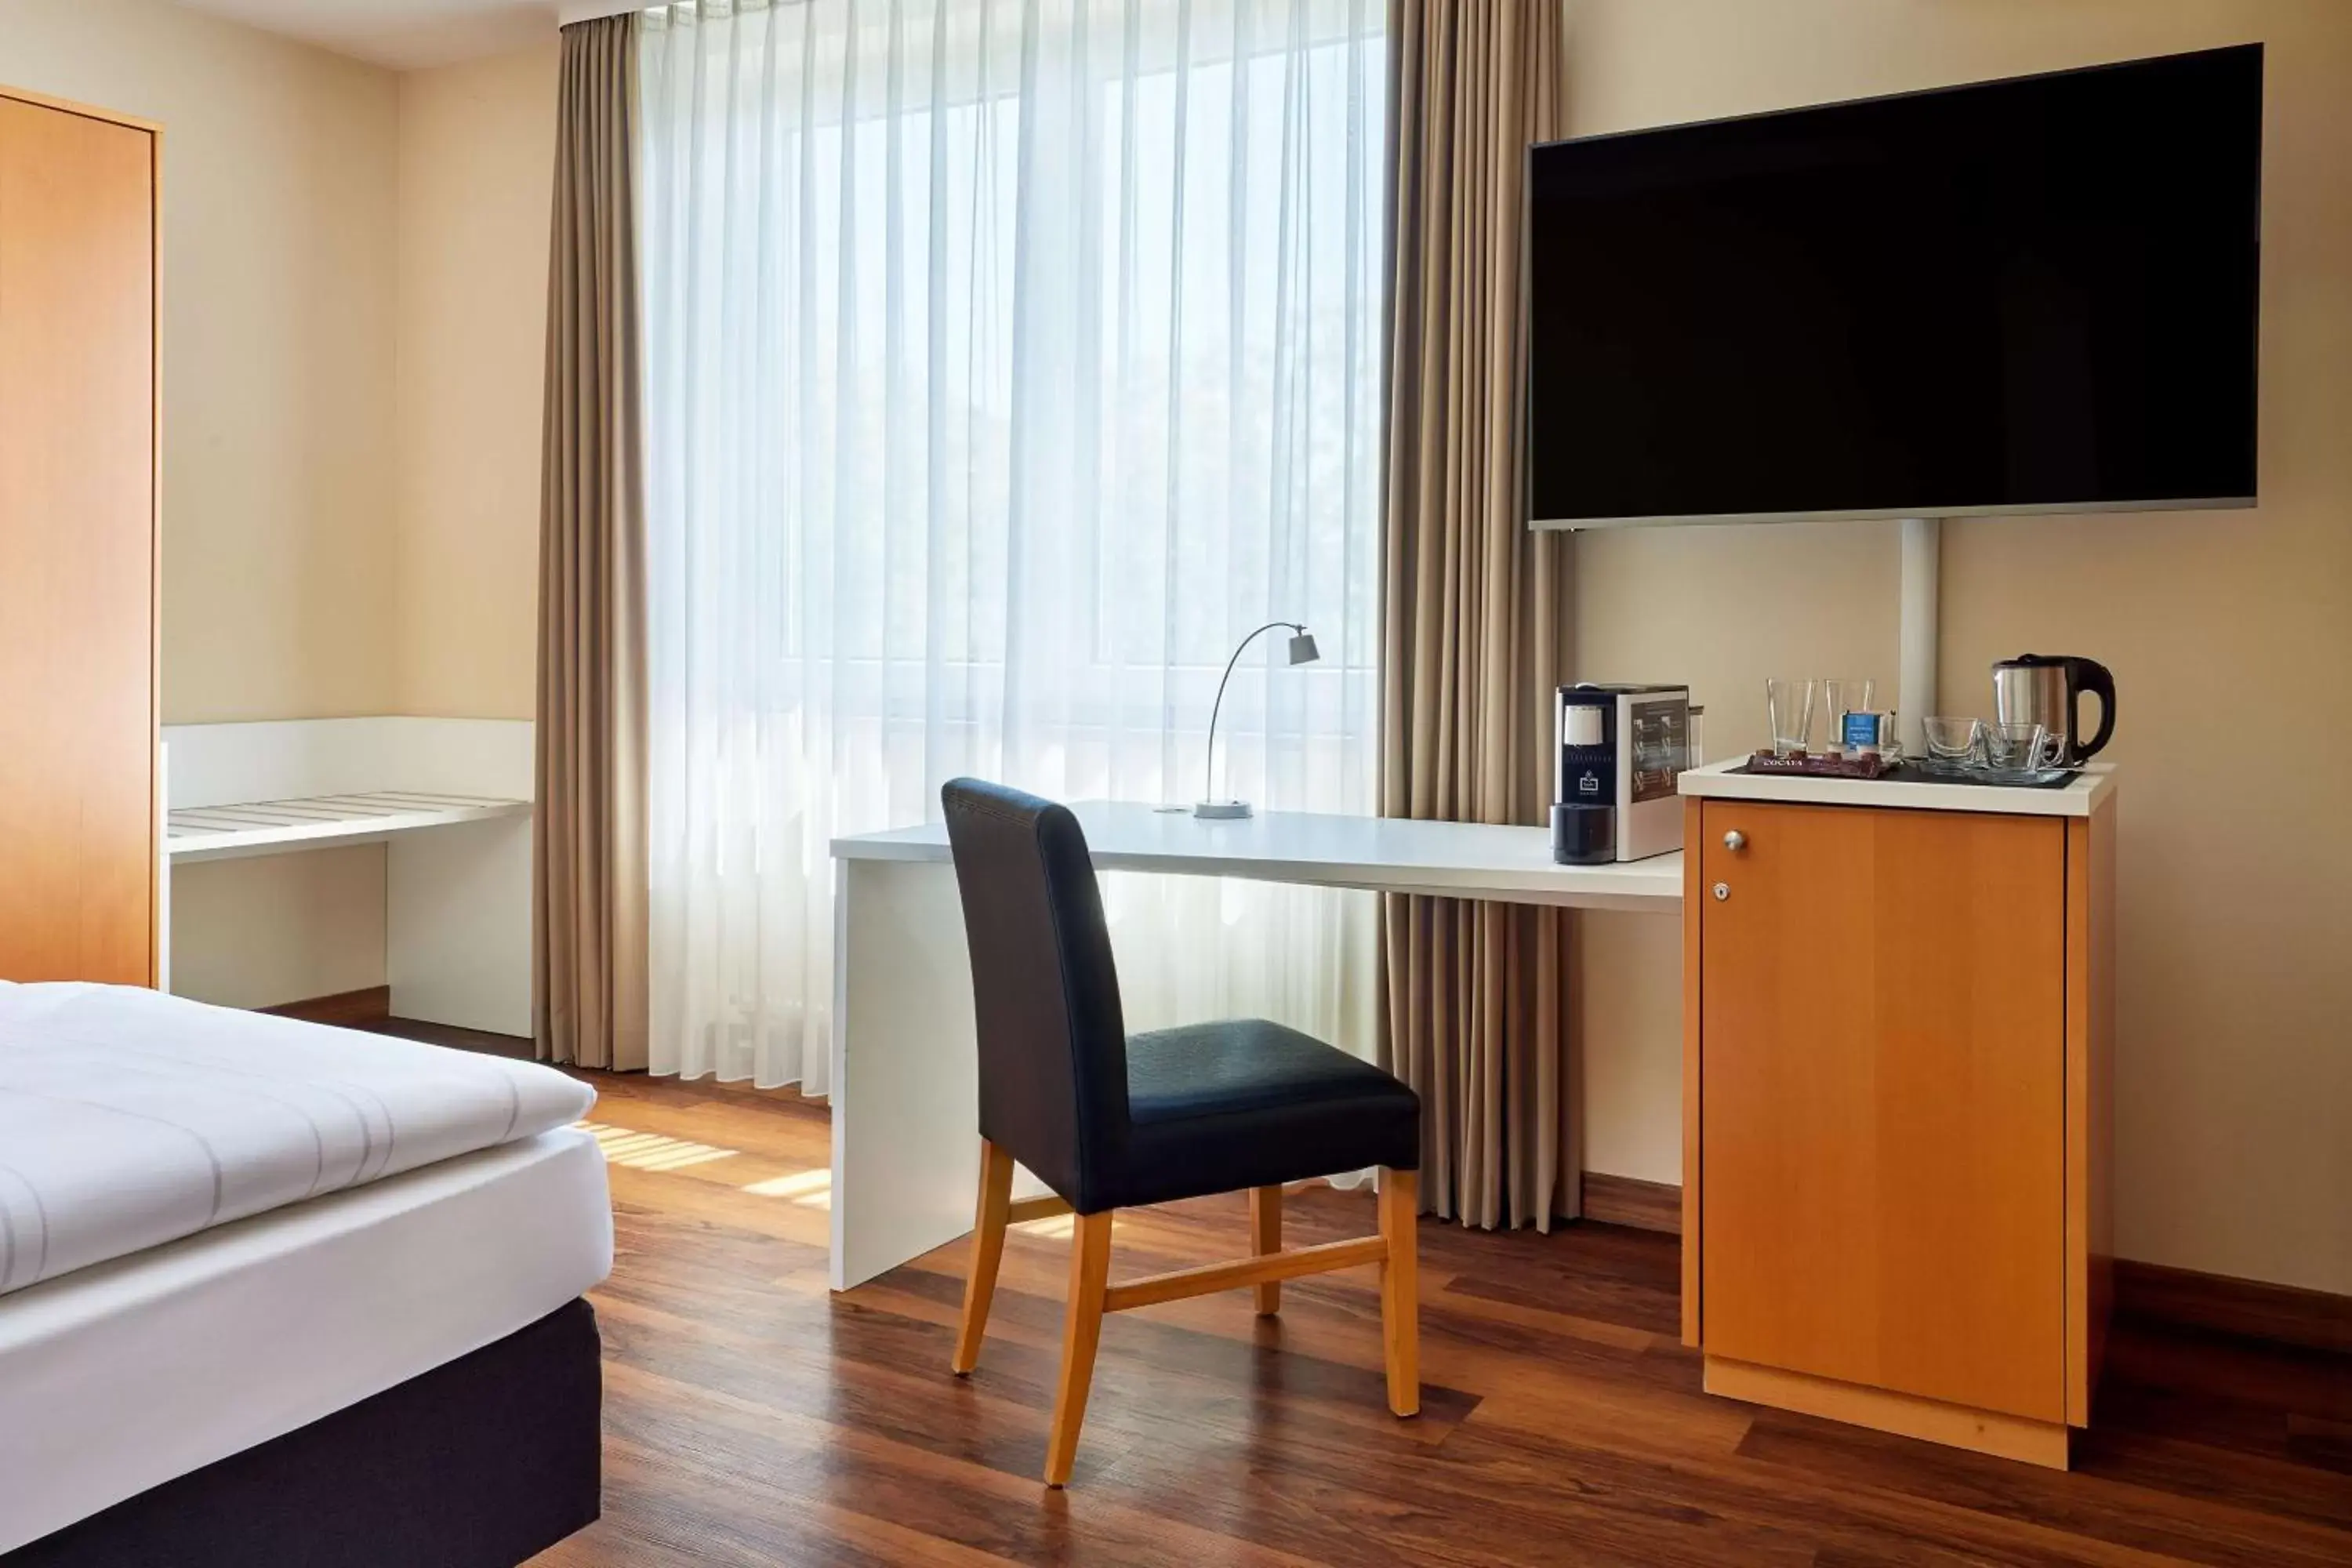 Bedroom, TV/Entertainment Center in Best Western Macrander Hotel Dresden